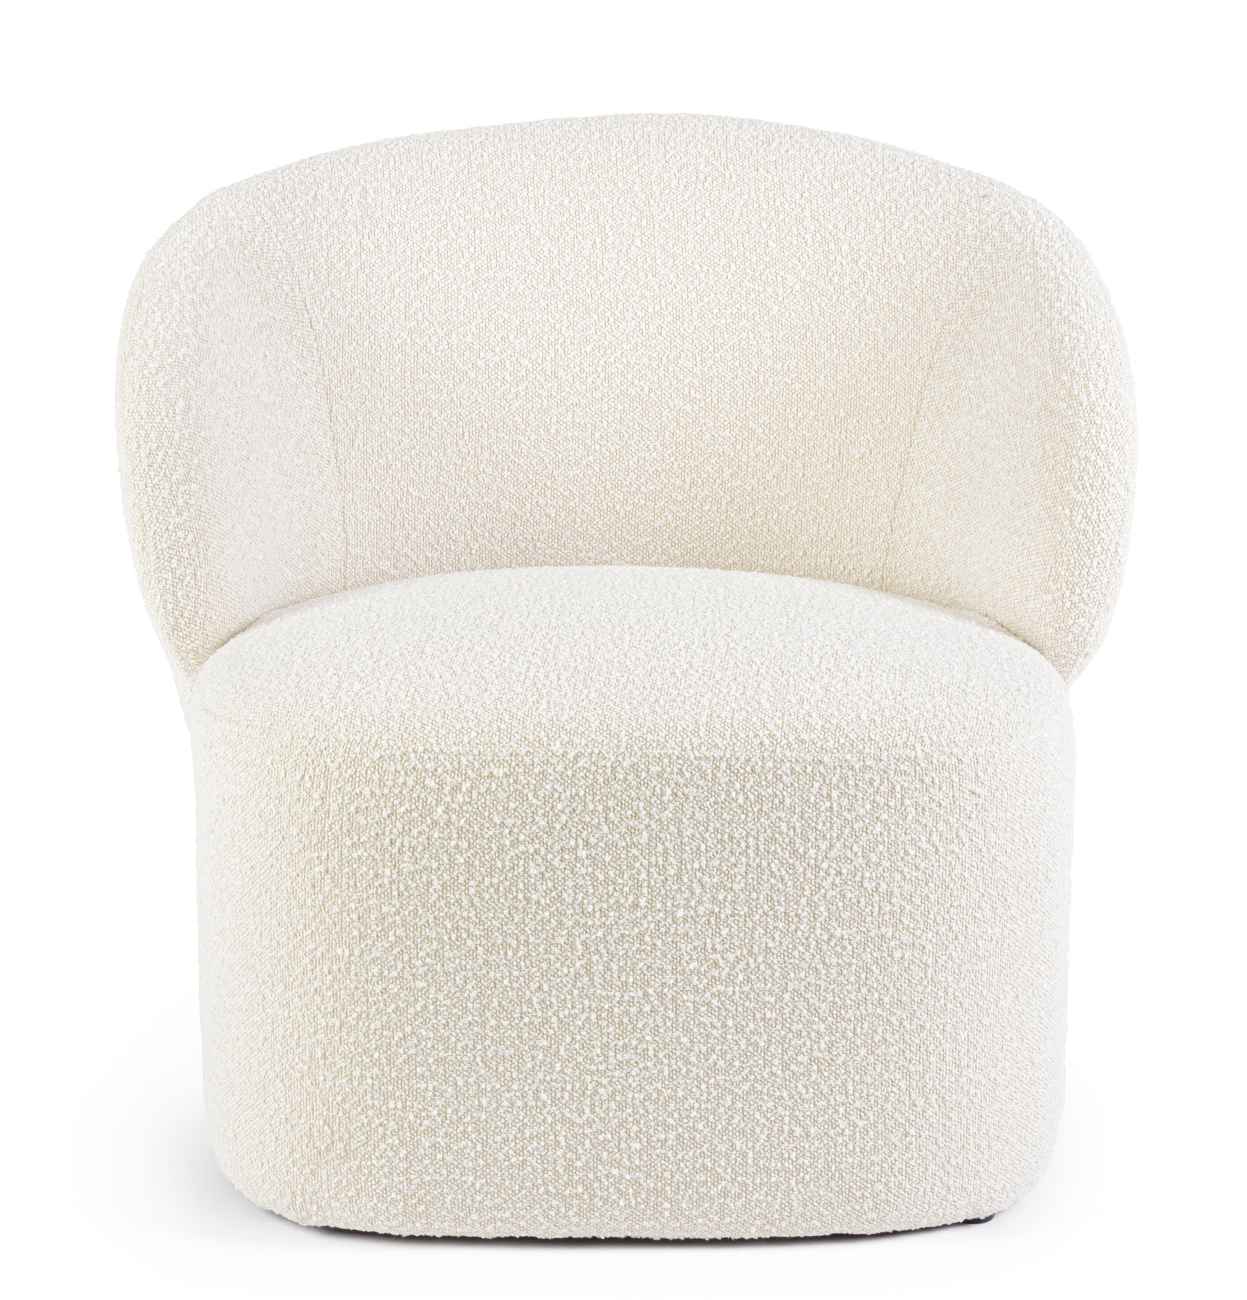 Der Sessel Babila überzeugt mit seinem modernen Stil. Gefertigt wurde er aus Boucle-Stoff, welcher einen natürlichen Farbton besitzt. Der Sessel besitzt eine Sitzhöhe von 44 cm.